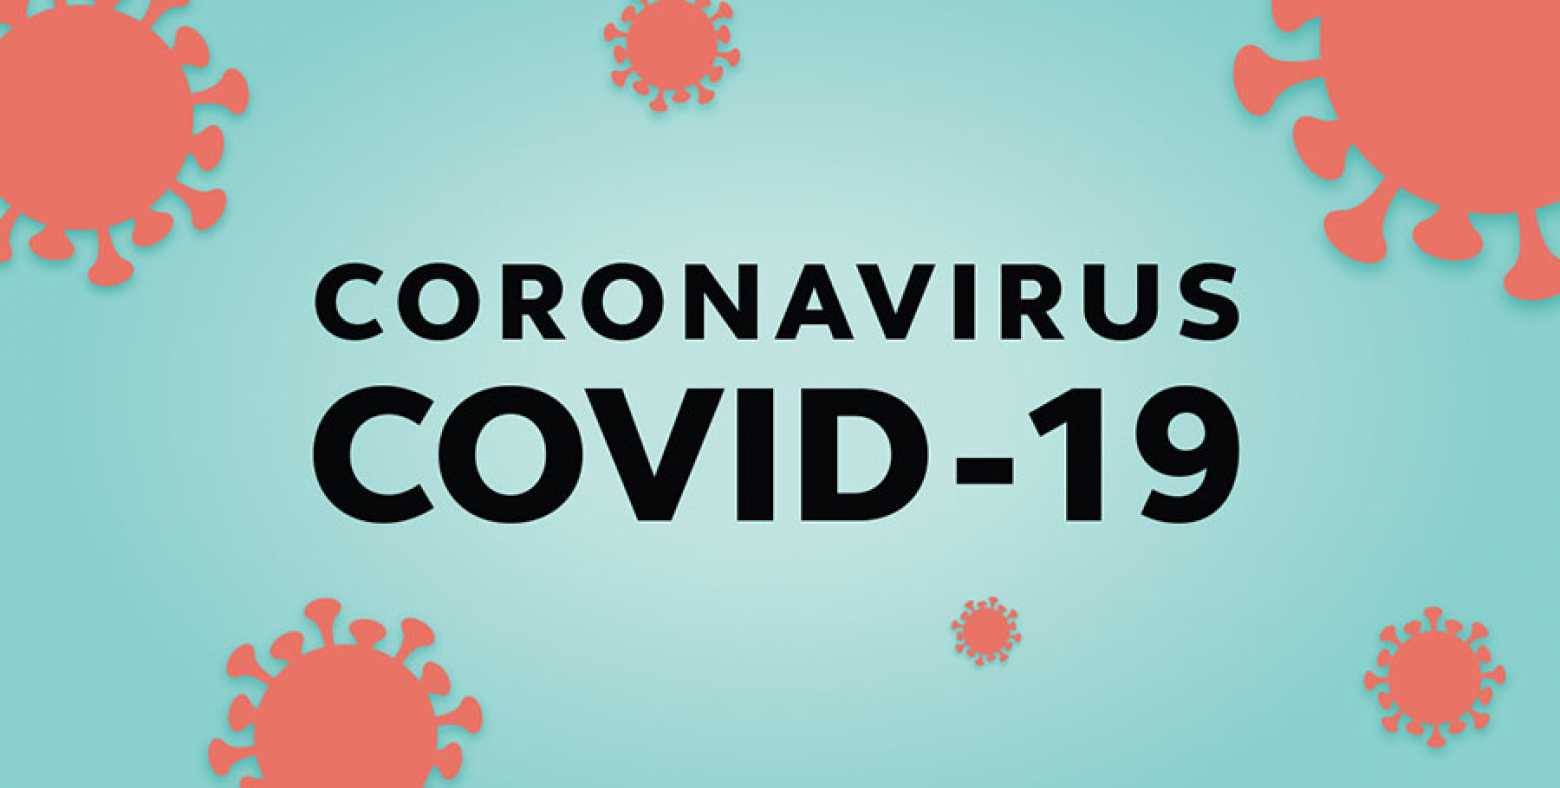 Coronavirus COVID-19 graphic